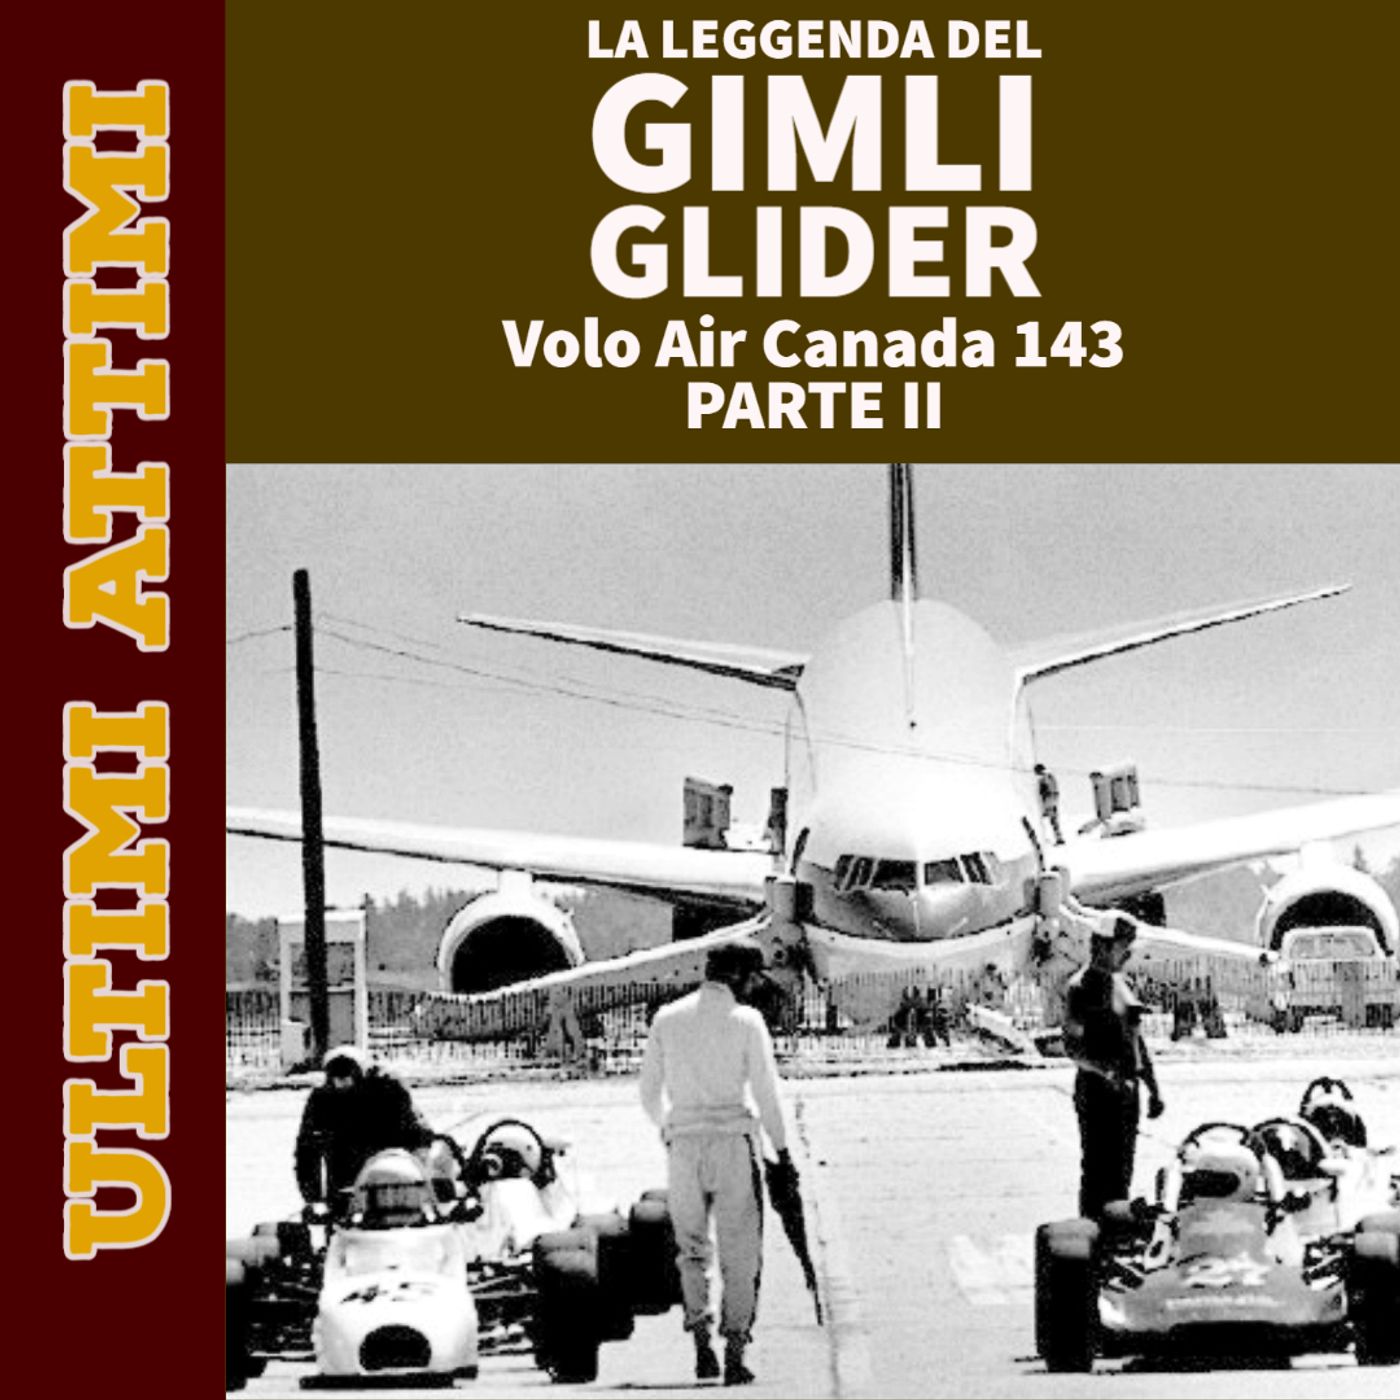 La leggenda del Gimli Glider - Volo Air Canada 143 (Parte II)